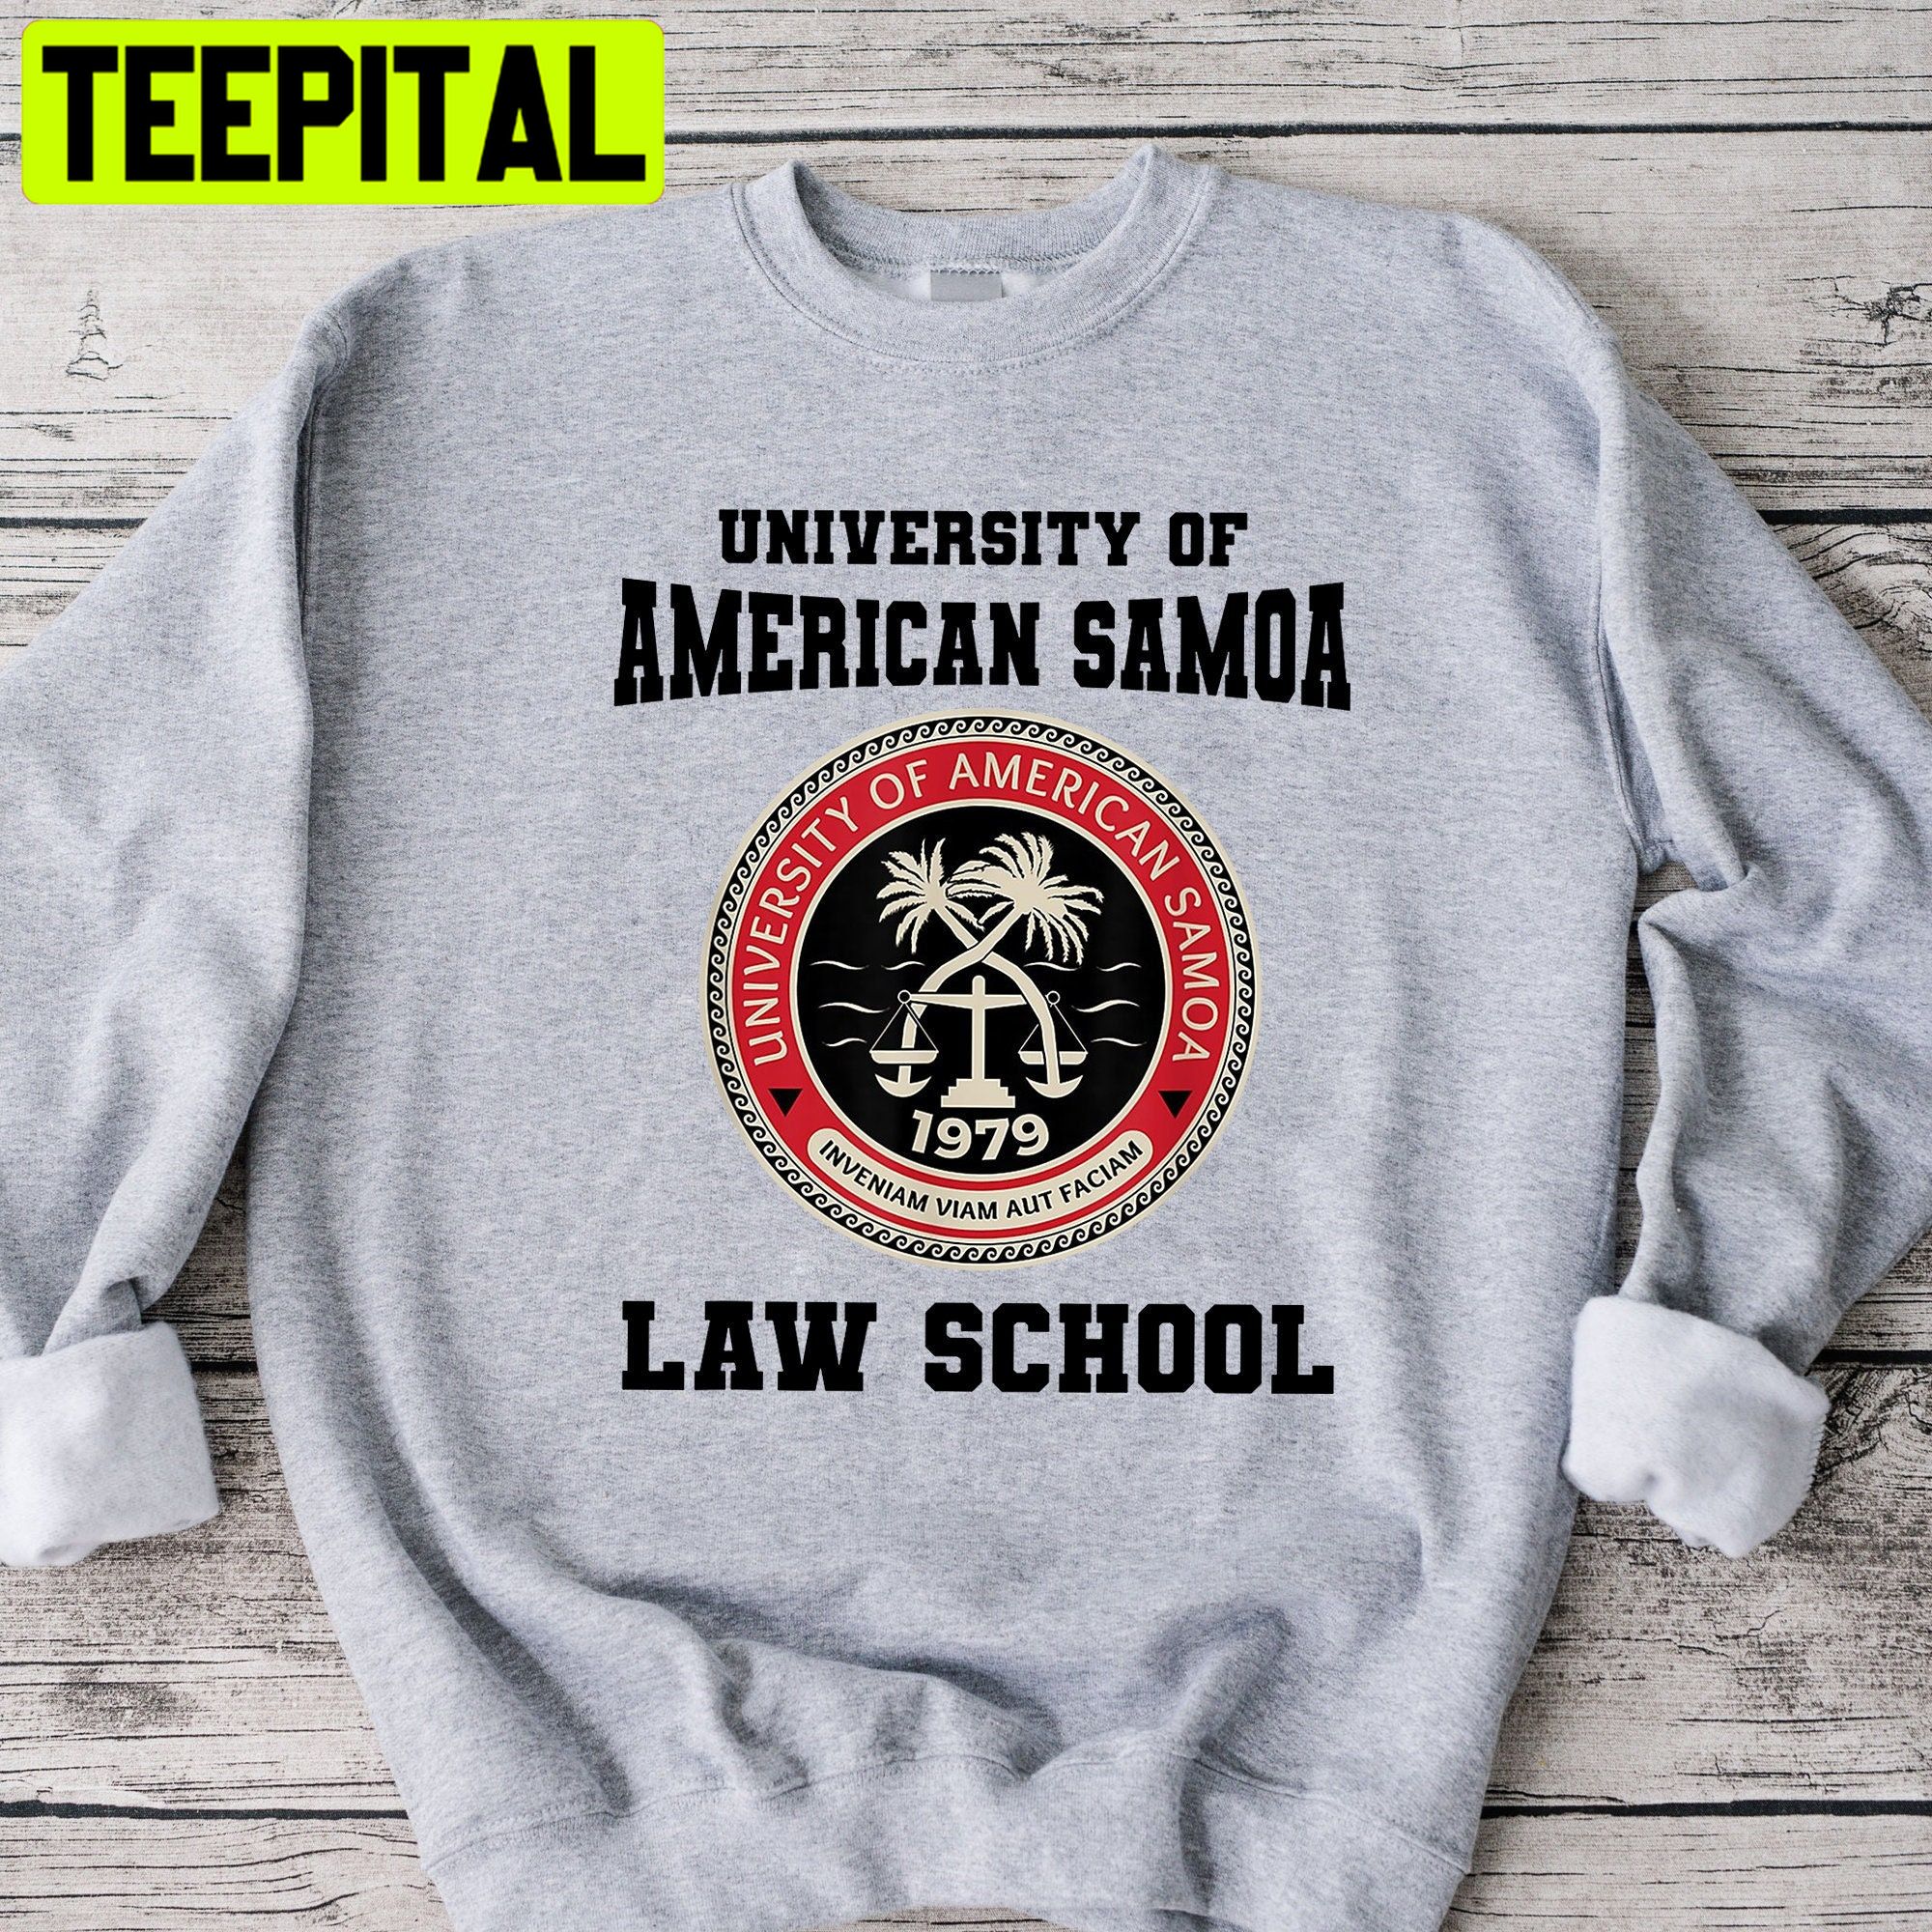 University Of American Samoa Law School Unisex Sweatshirt